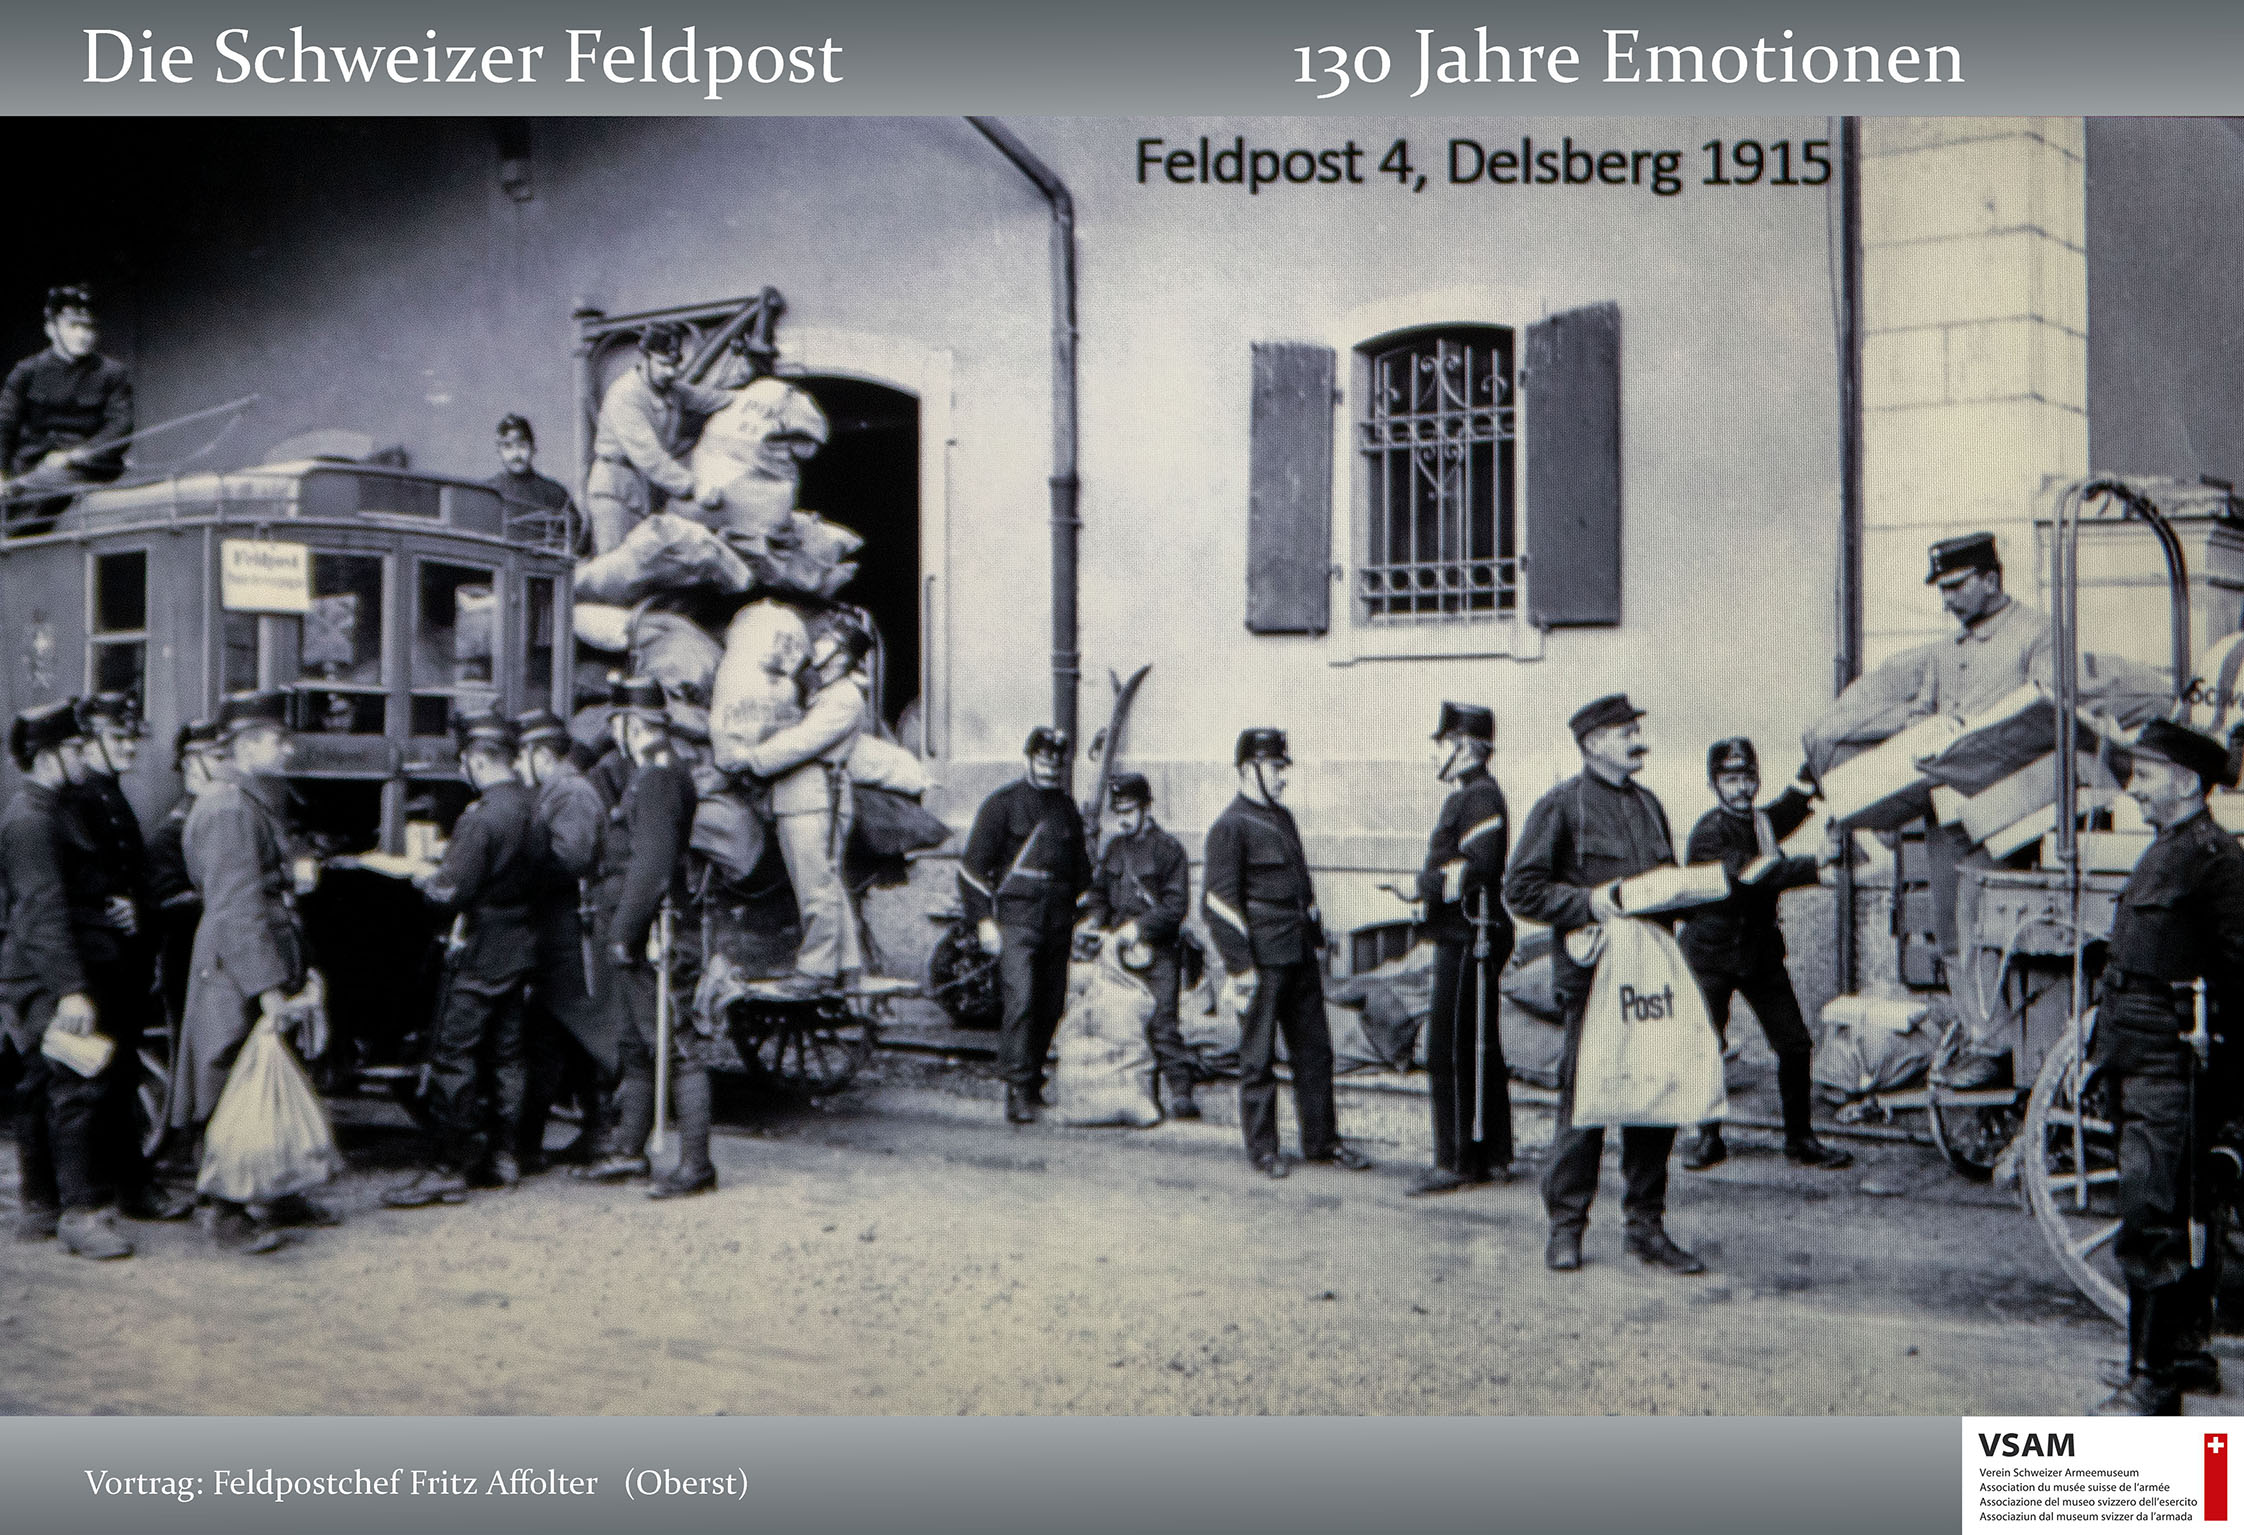 VSAM Vortrag Die Schweizer Feldpost 130 Jahre Emotionen von Frit